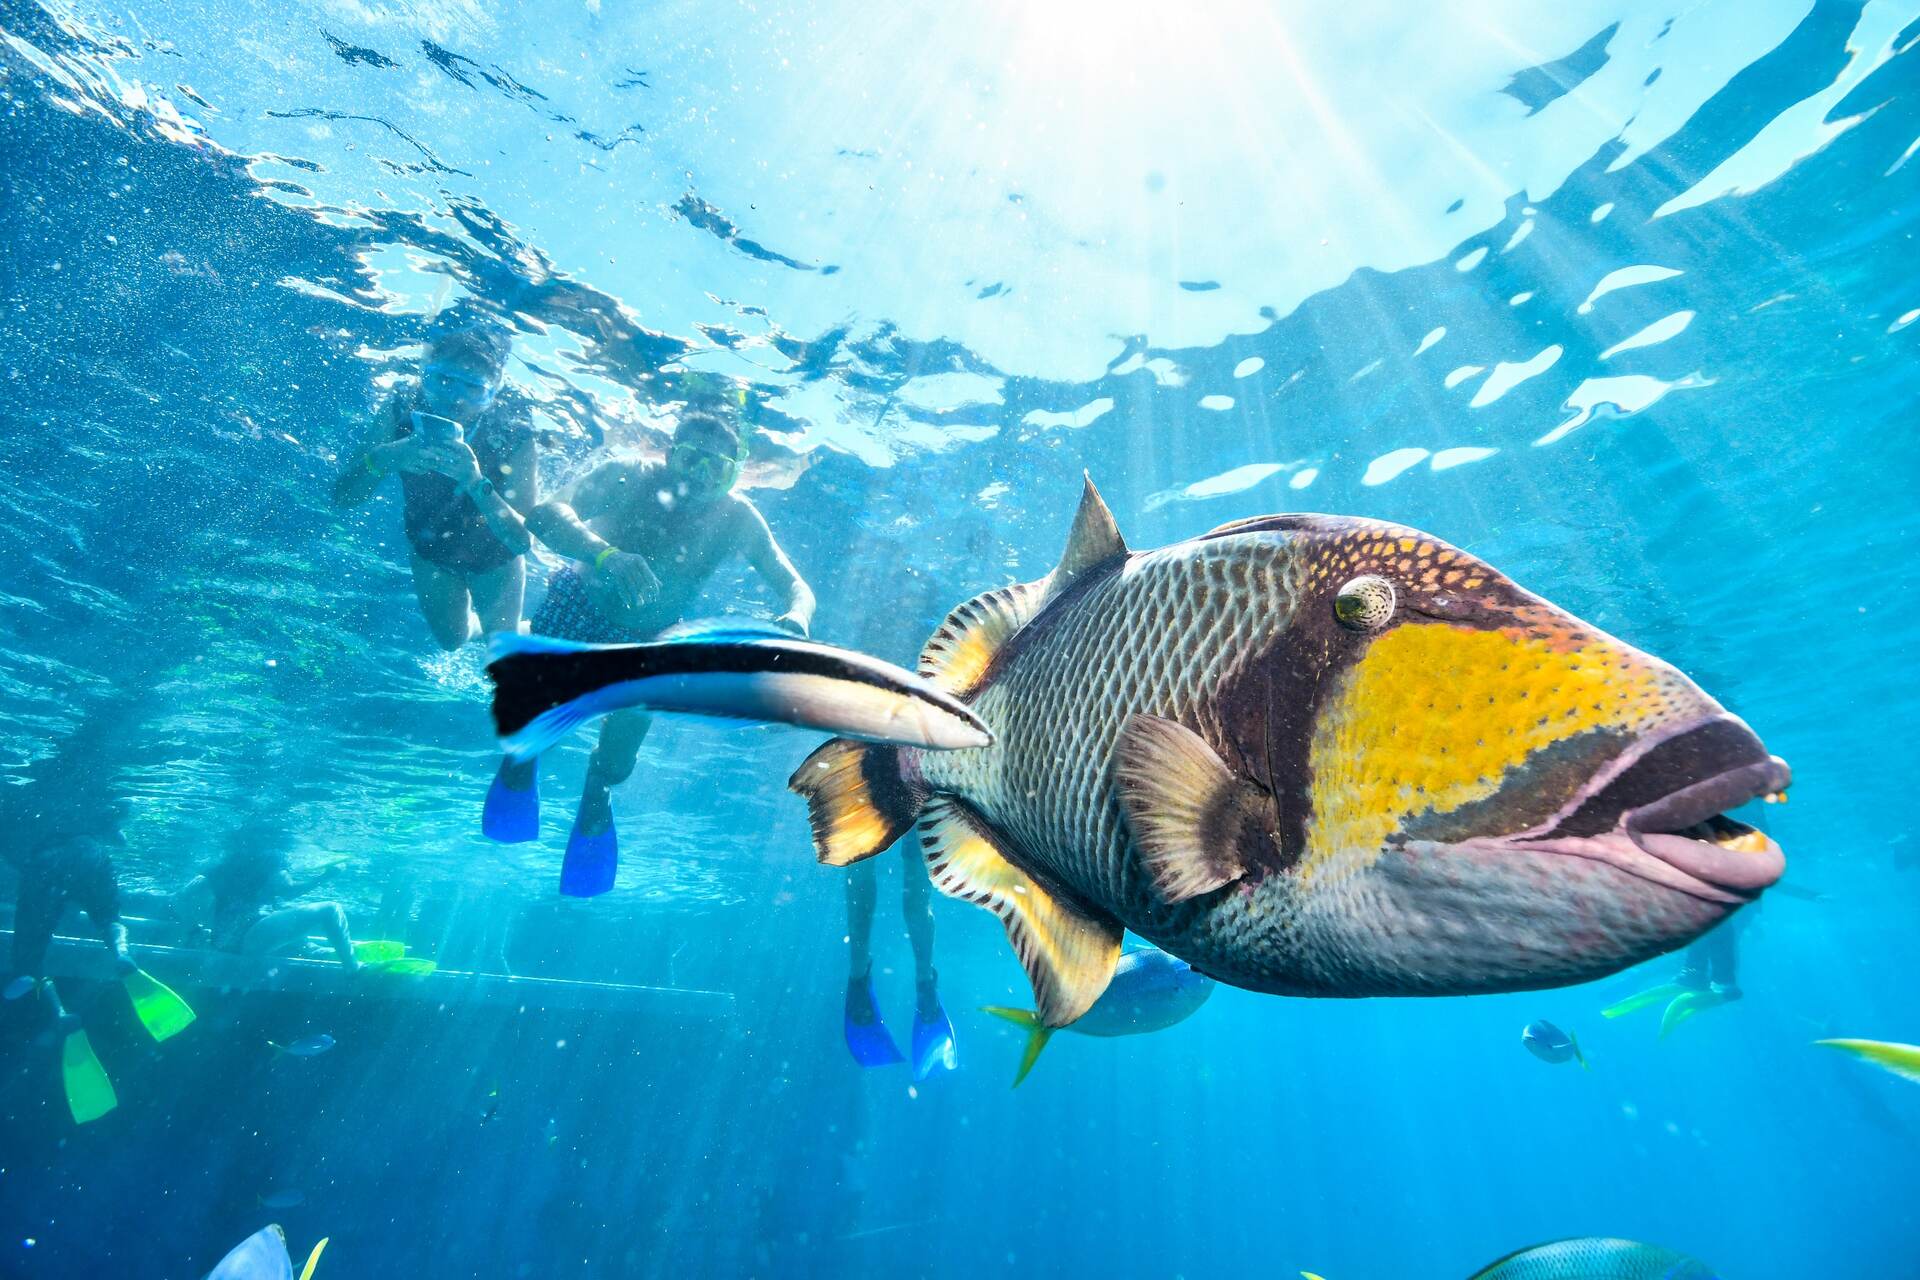 Sztuczne mięśnie: ruch ryby pod wodą jest jednym z najtrudniejszych do odtworzenia